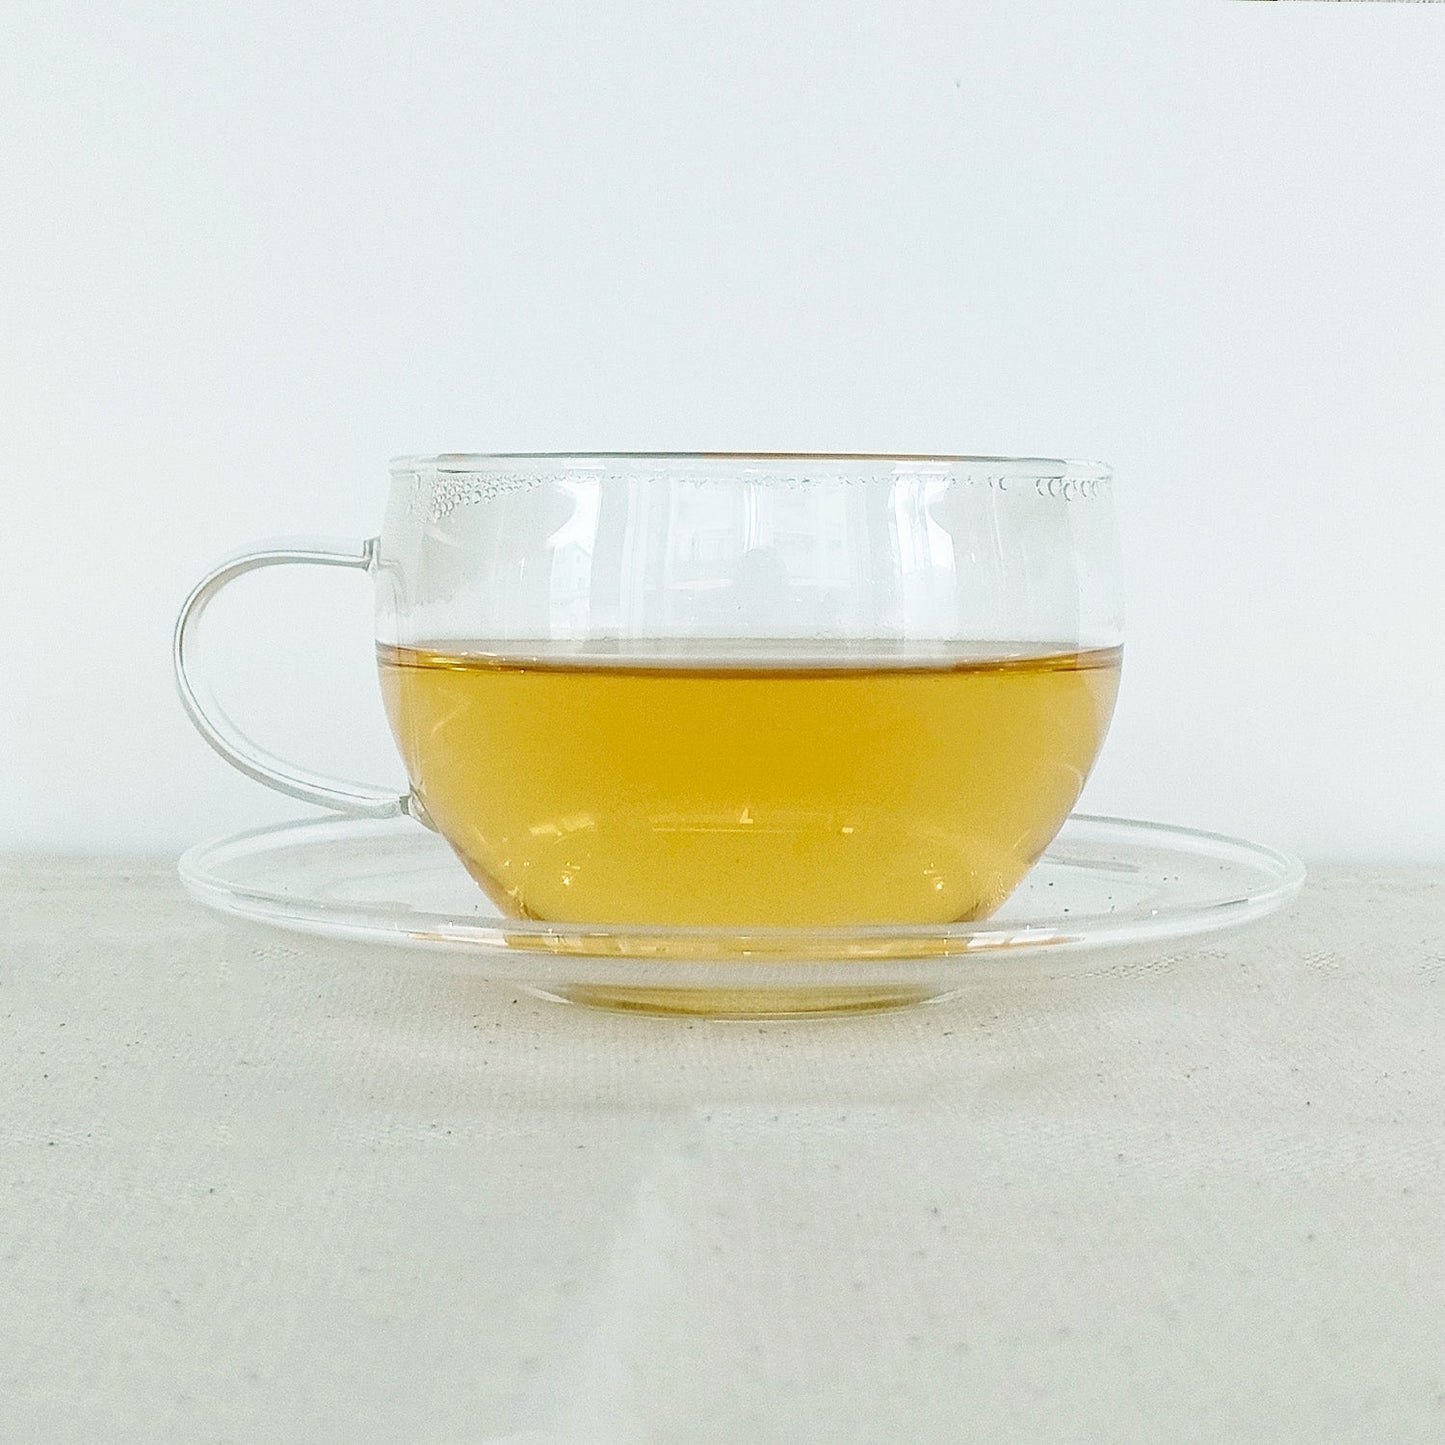 桑の葉茶 × 1パック(2包入り)